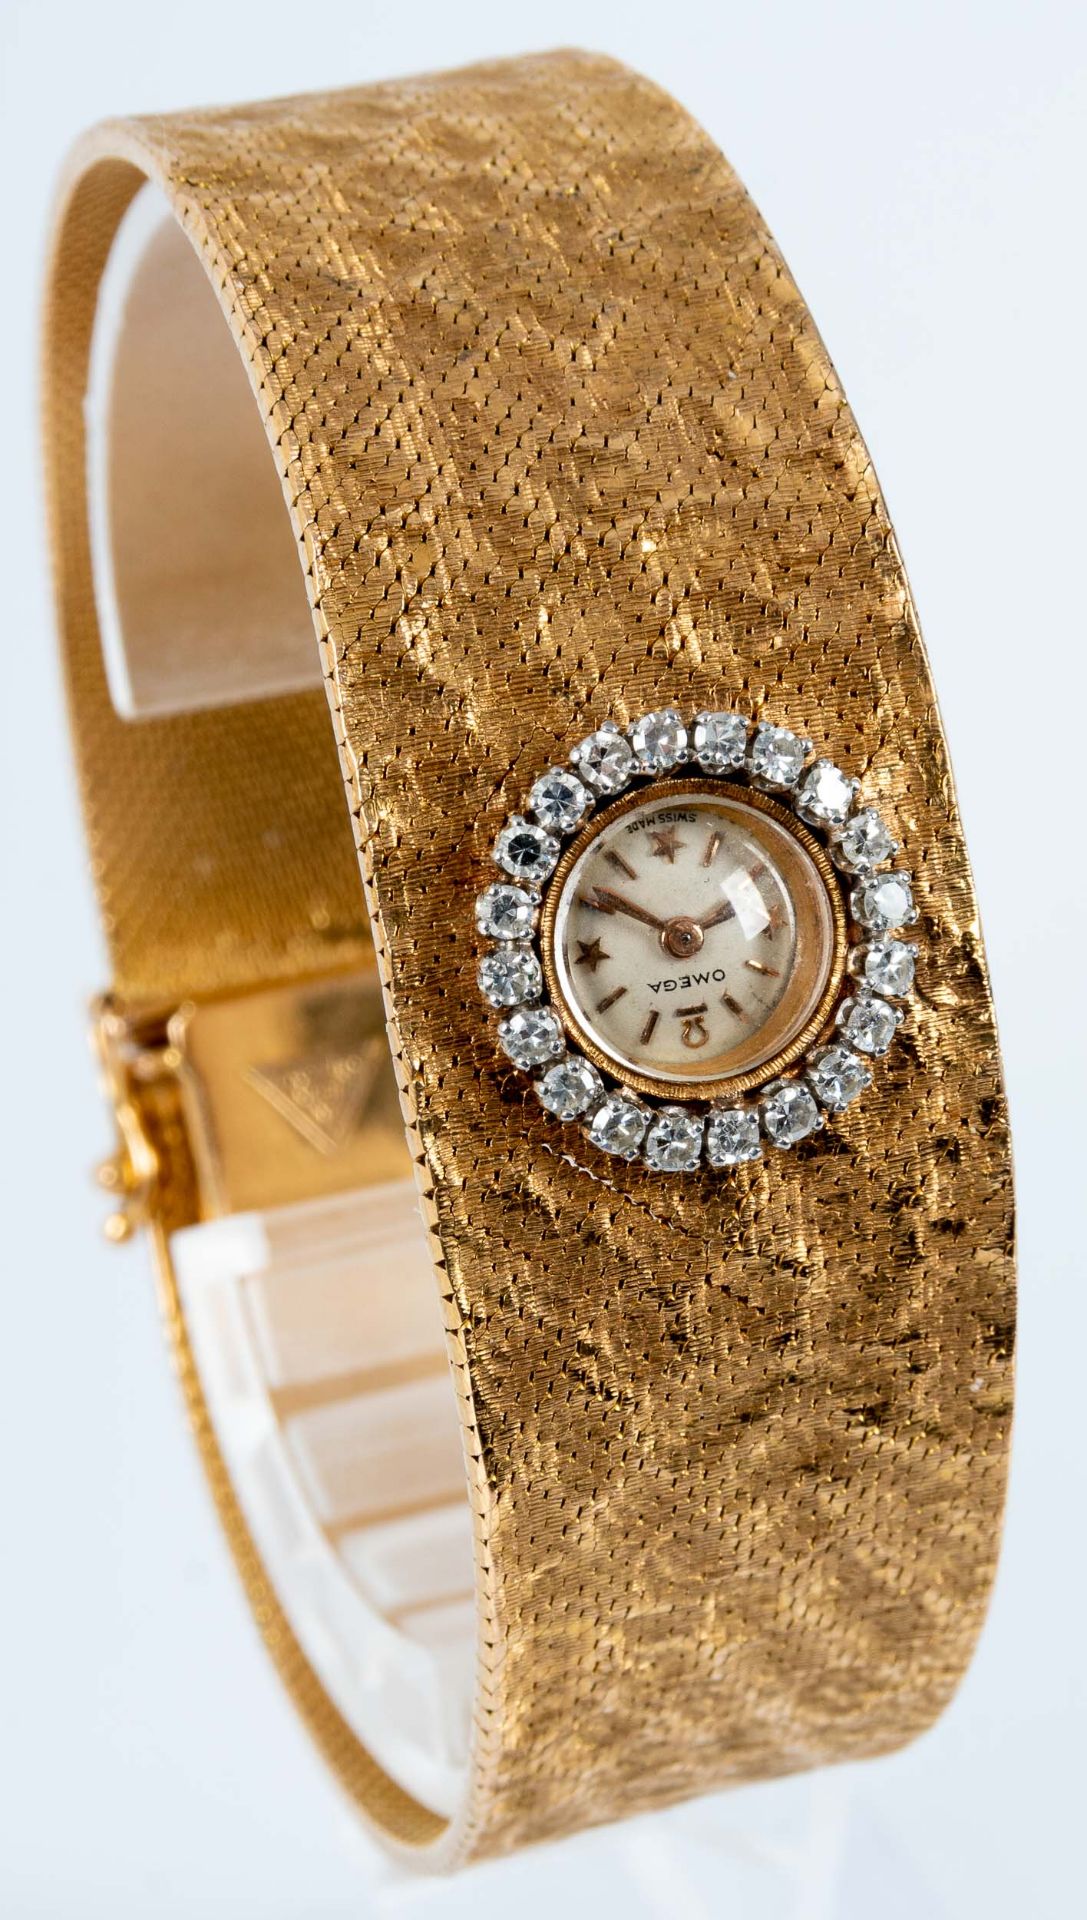 Außergewöhnliche Damen- Armbanduhr, das zur Mitte hin breiter werdende, in Hammerschlagoptik gearbe - Bild 5 aus 11